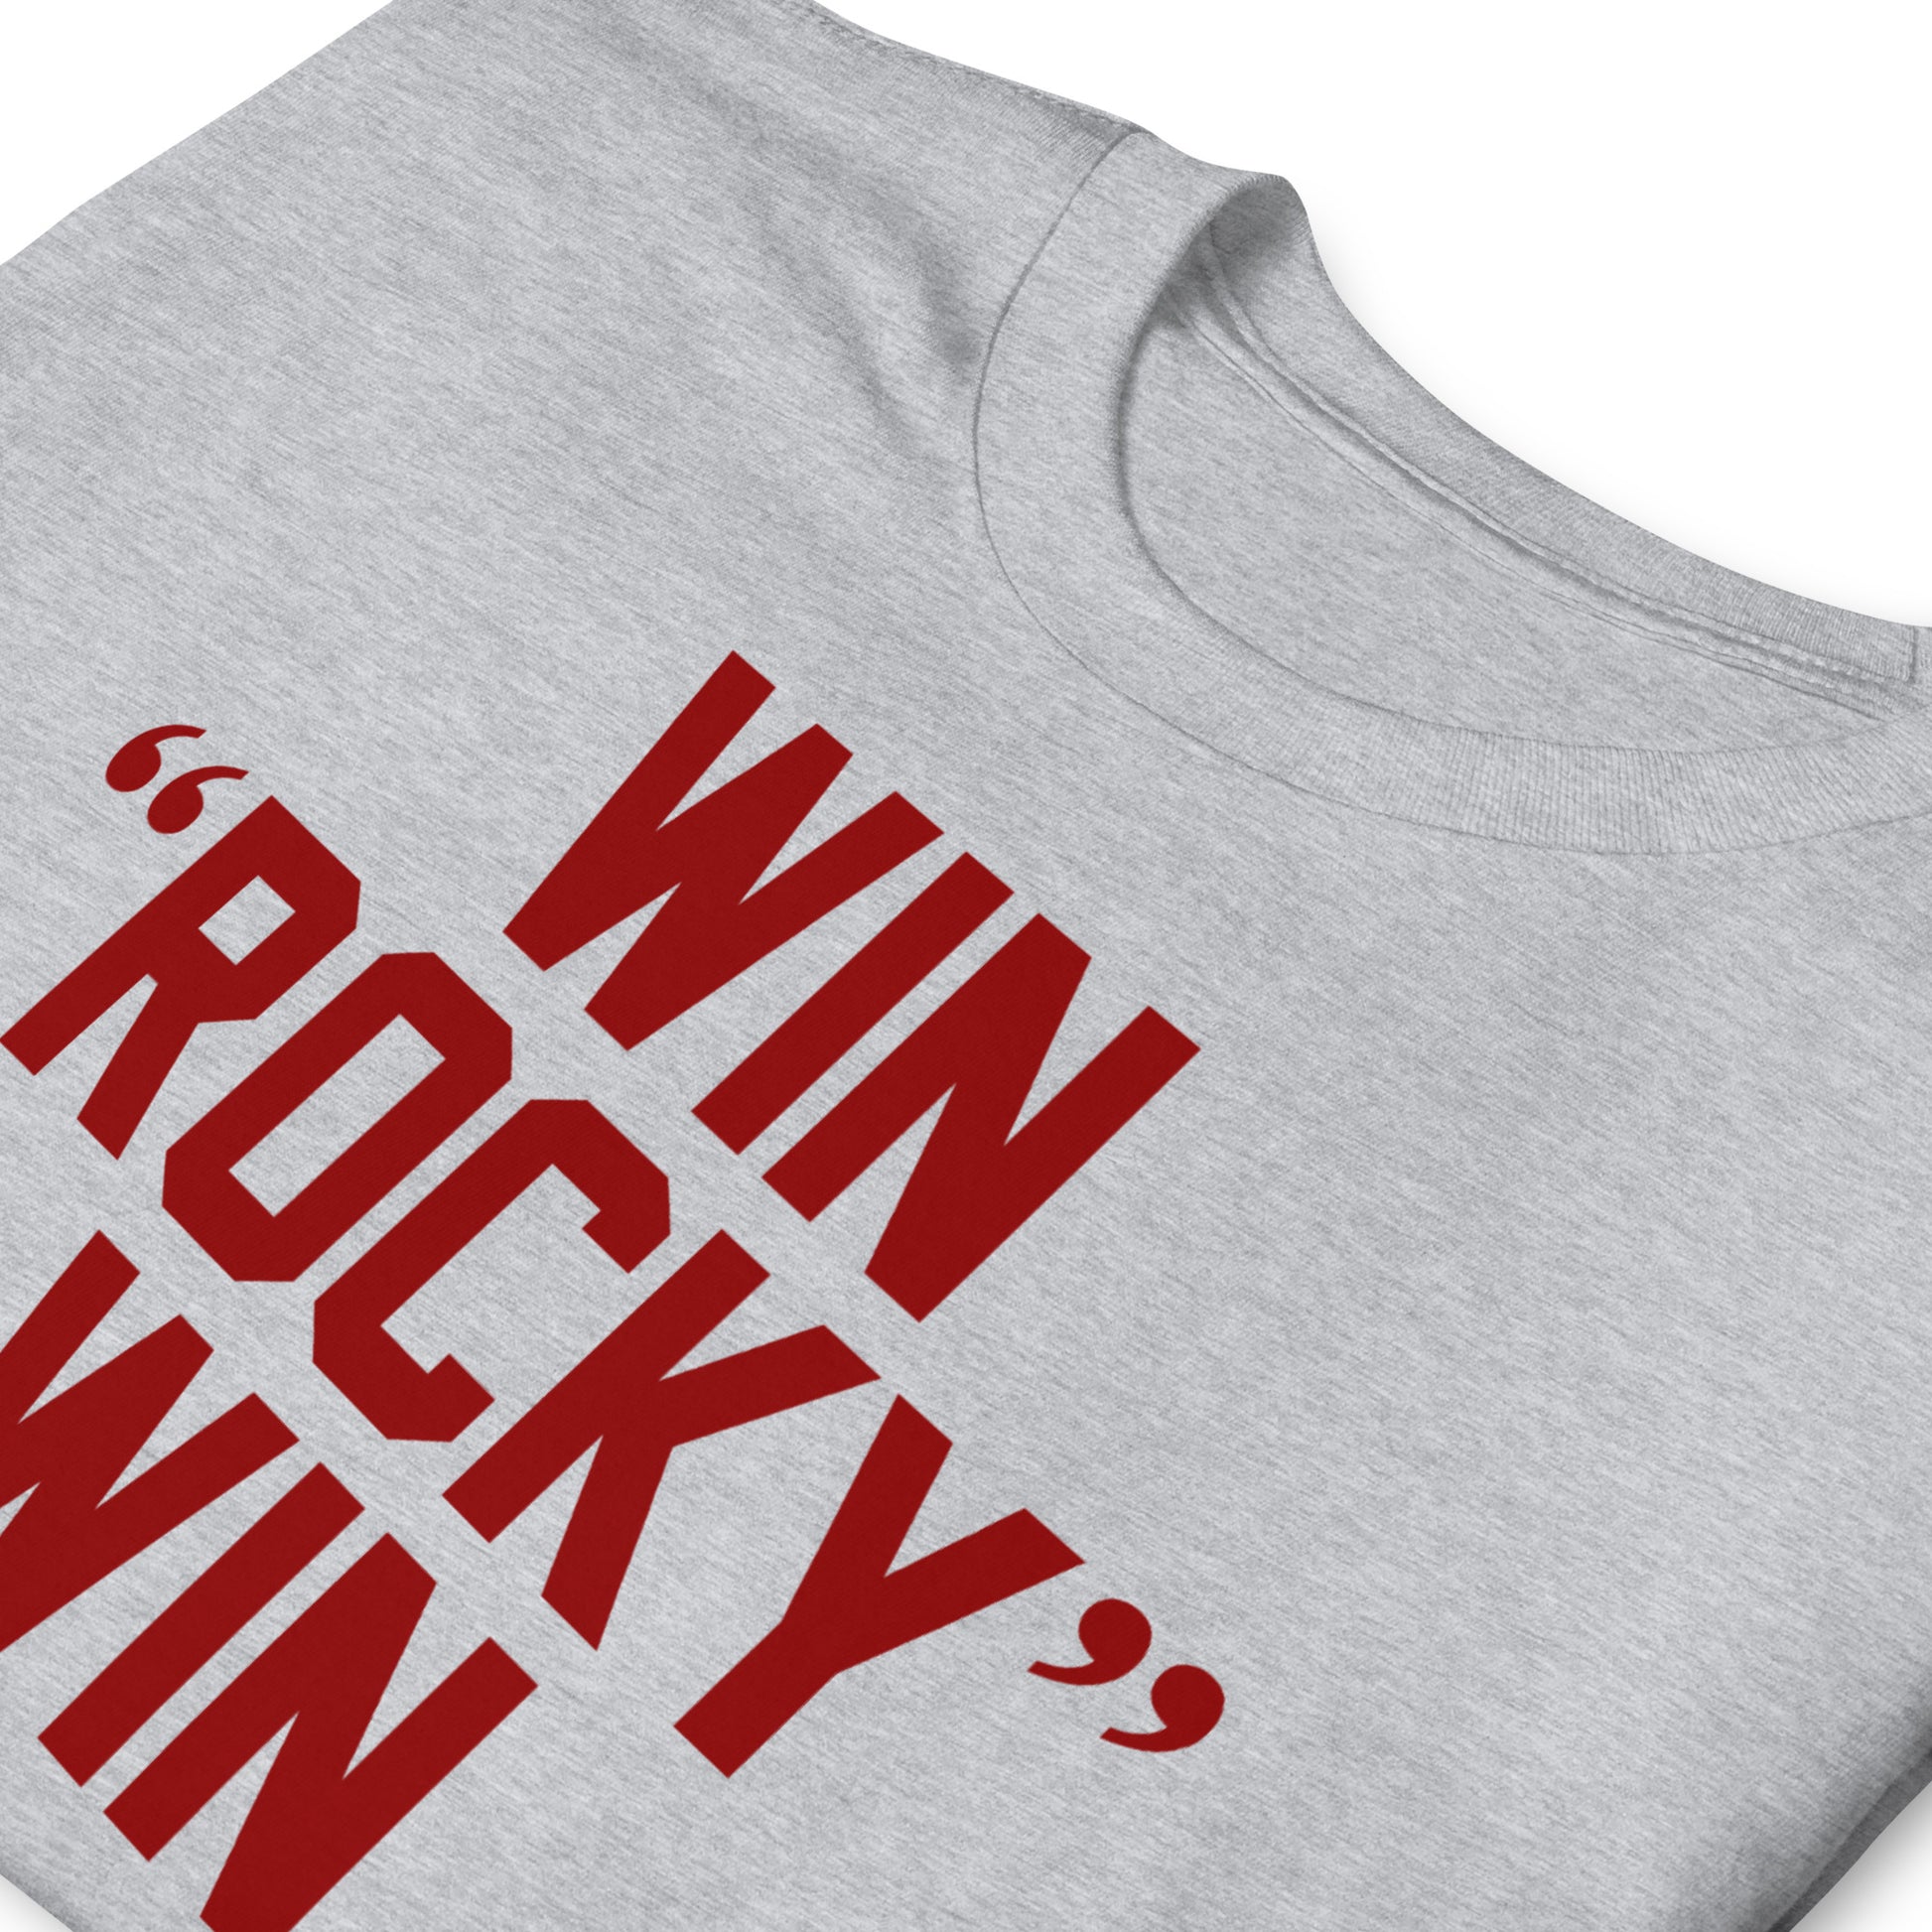 Camiseta Win Rocky Win de la película Rocky. Color gris.